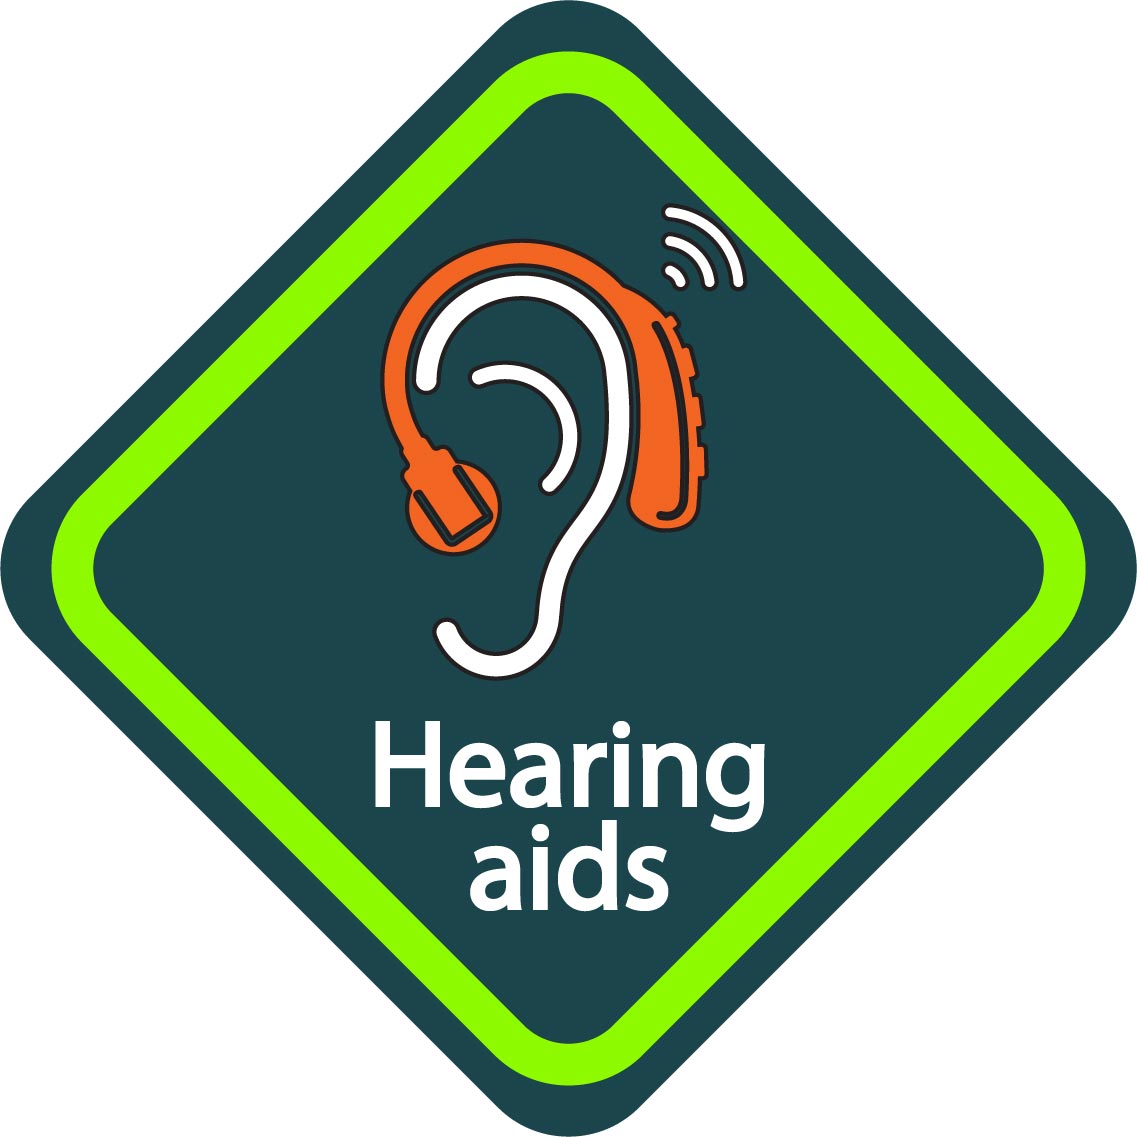 hearing aids reminder sign